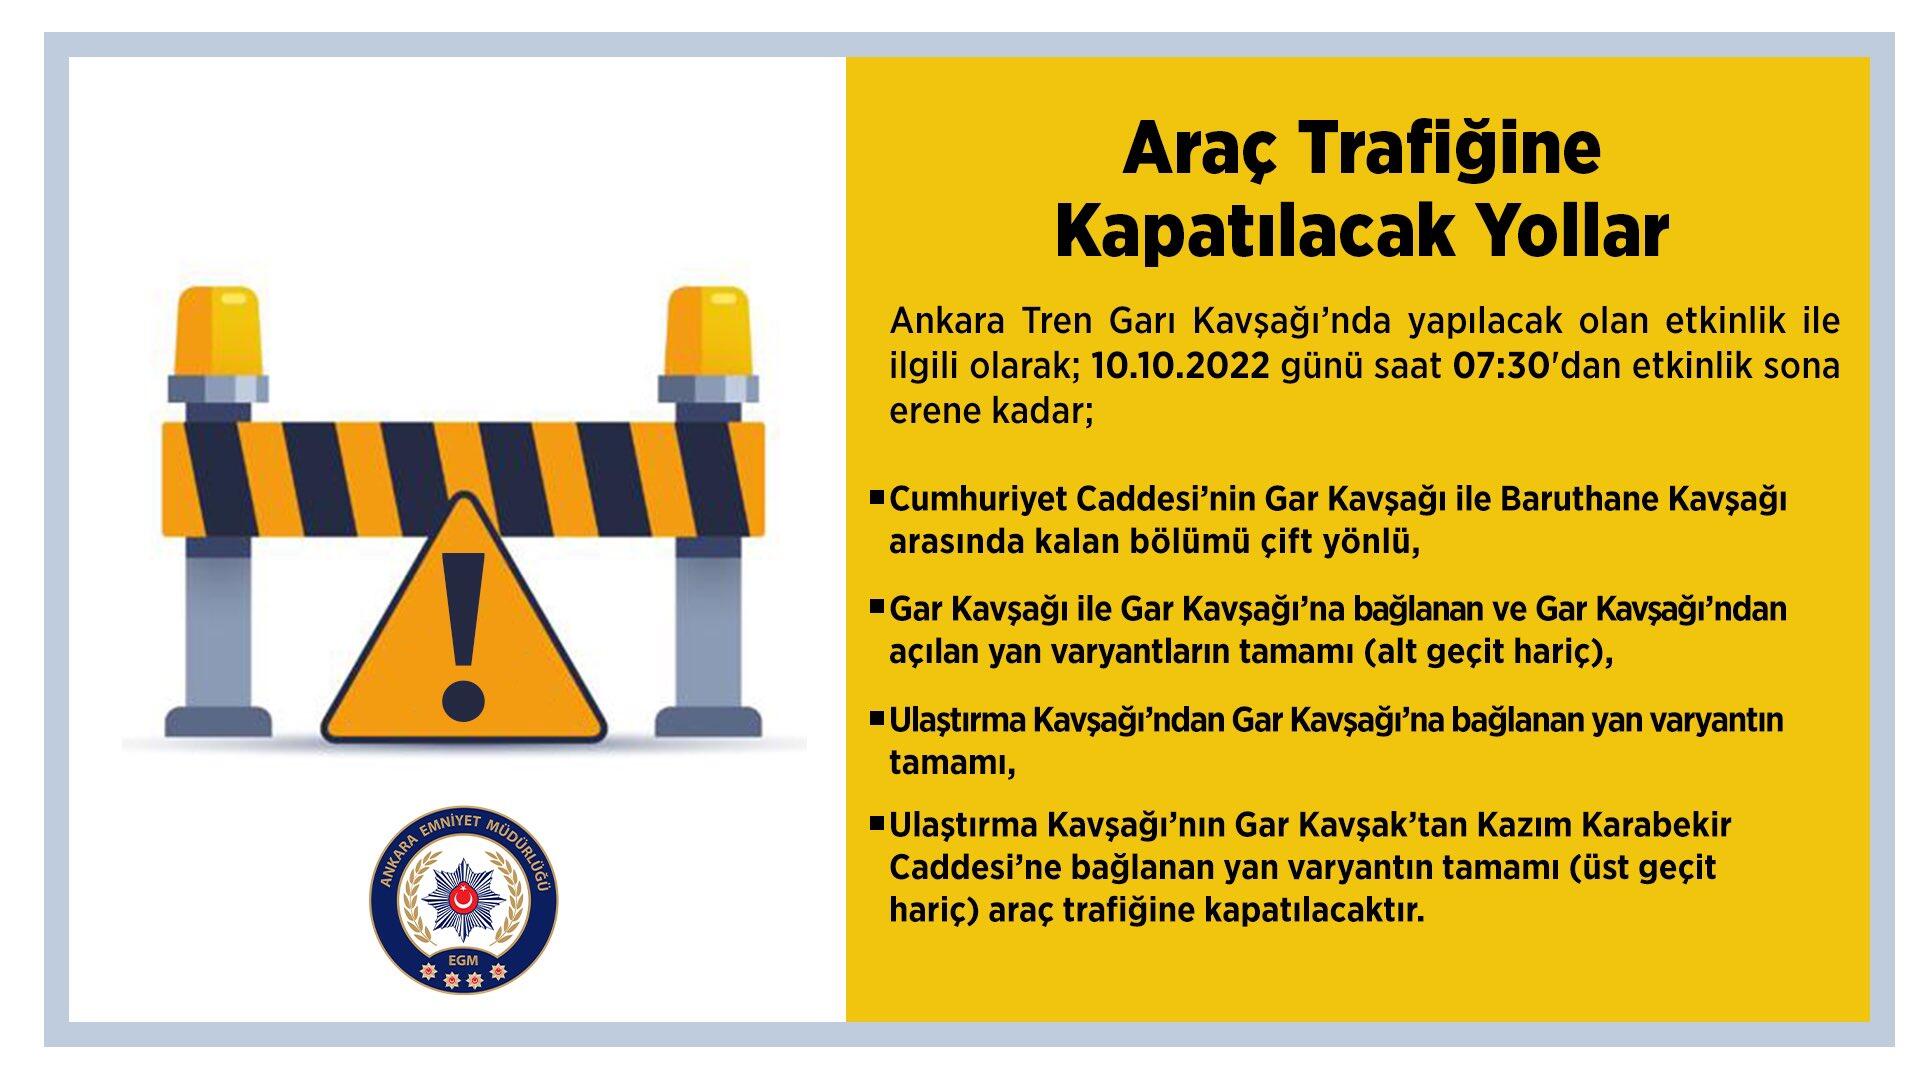 Ankara'da pazartesi günü bazı yollar trafiğe kapatılacak